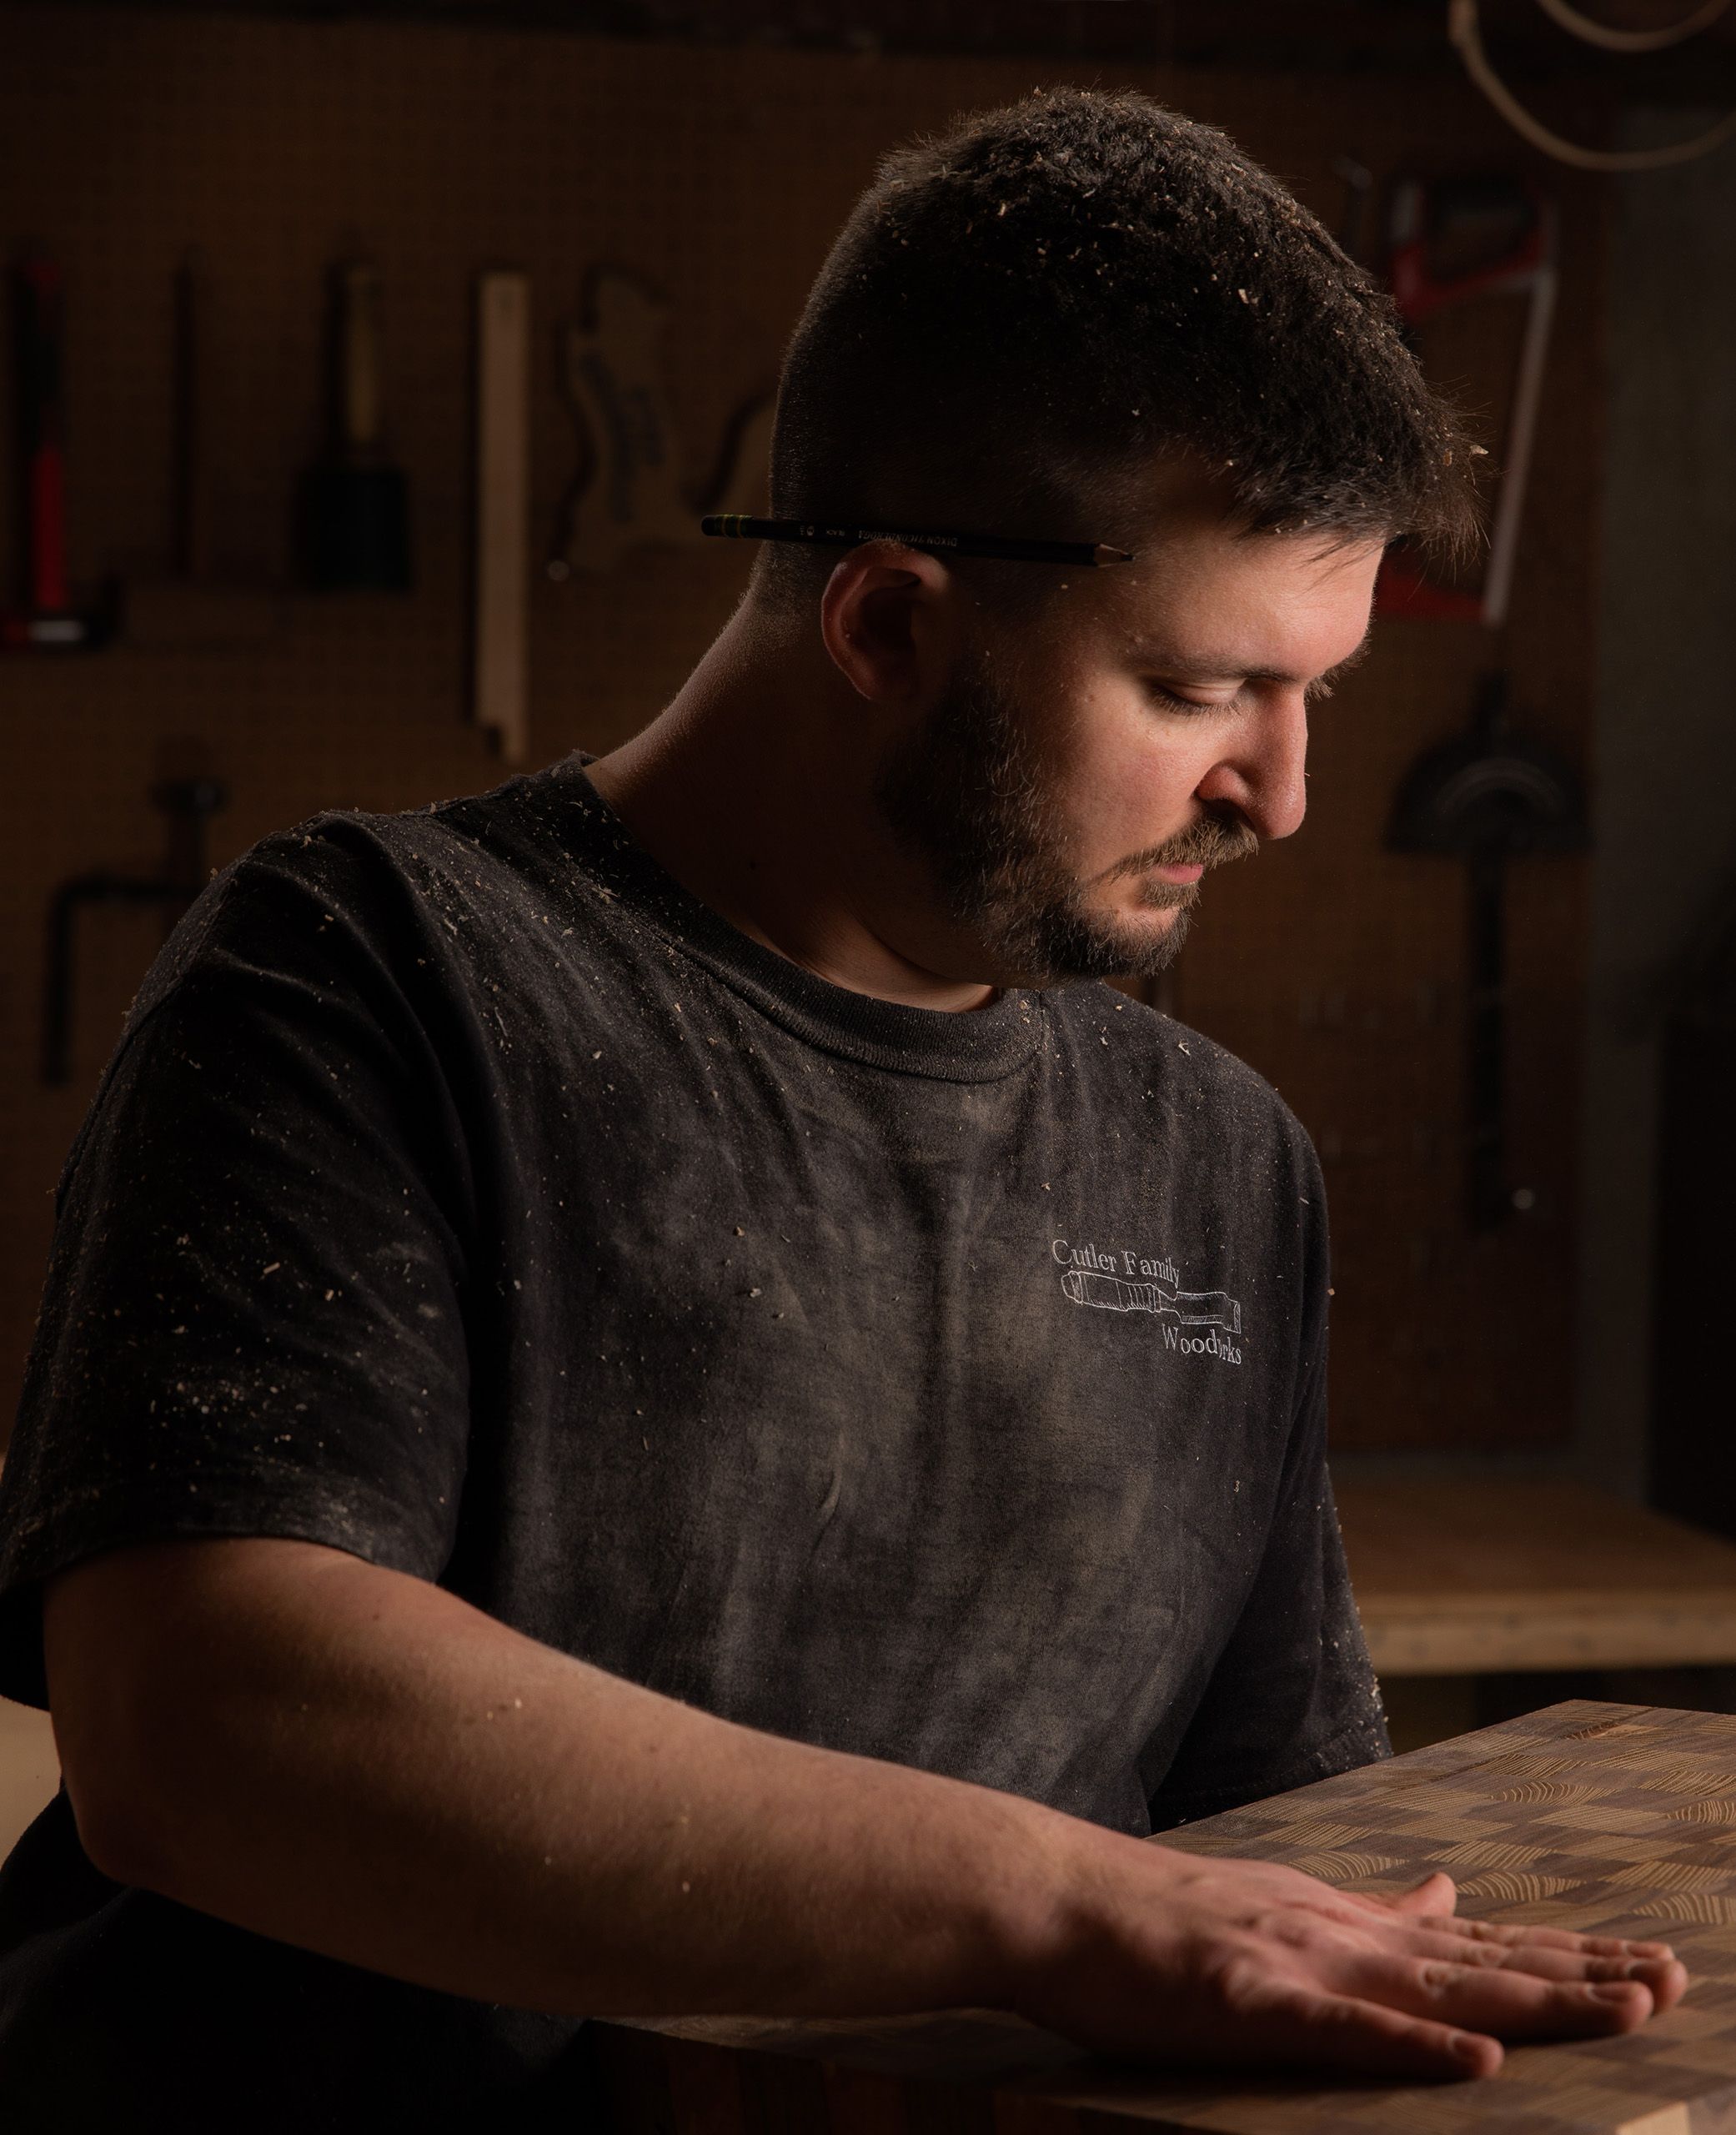 Cutting board craftsmen 